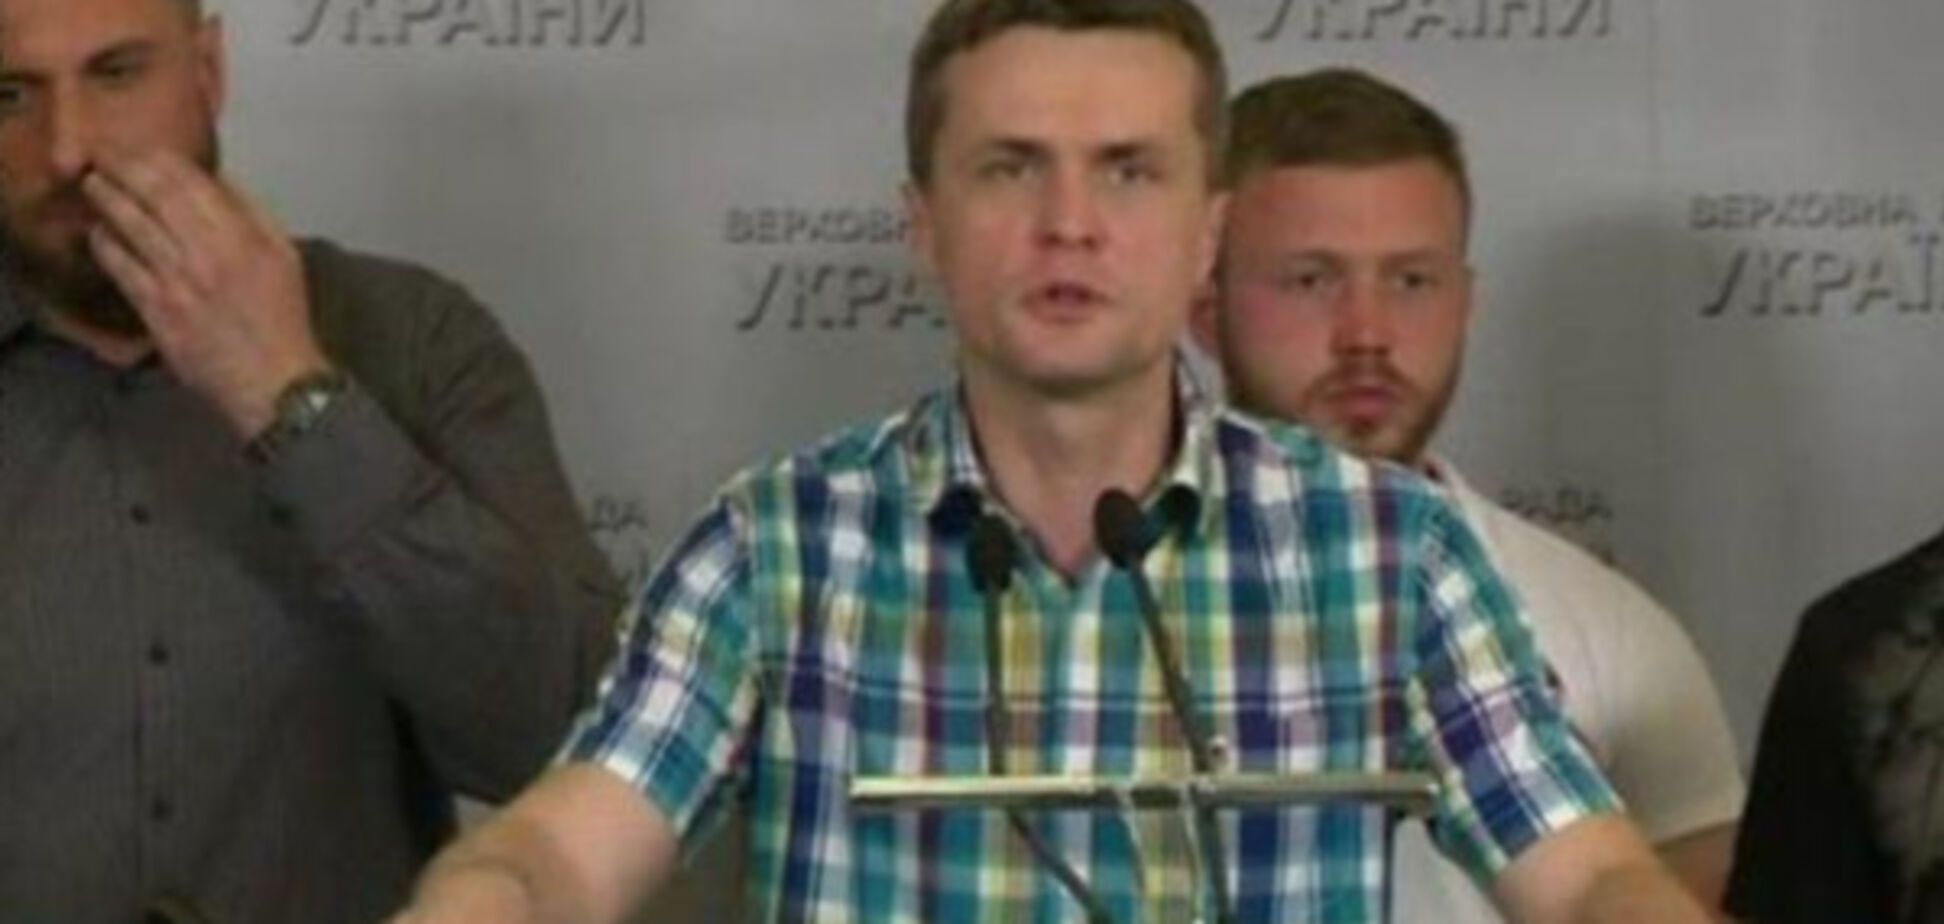 Нардеп Бобов причастен к делу об убийстве журналиста Сергиенко - Луценко